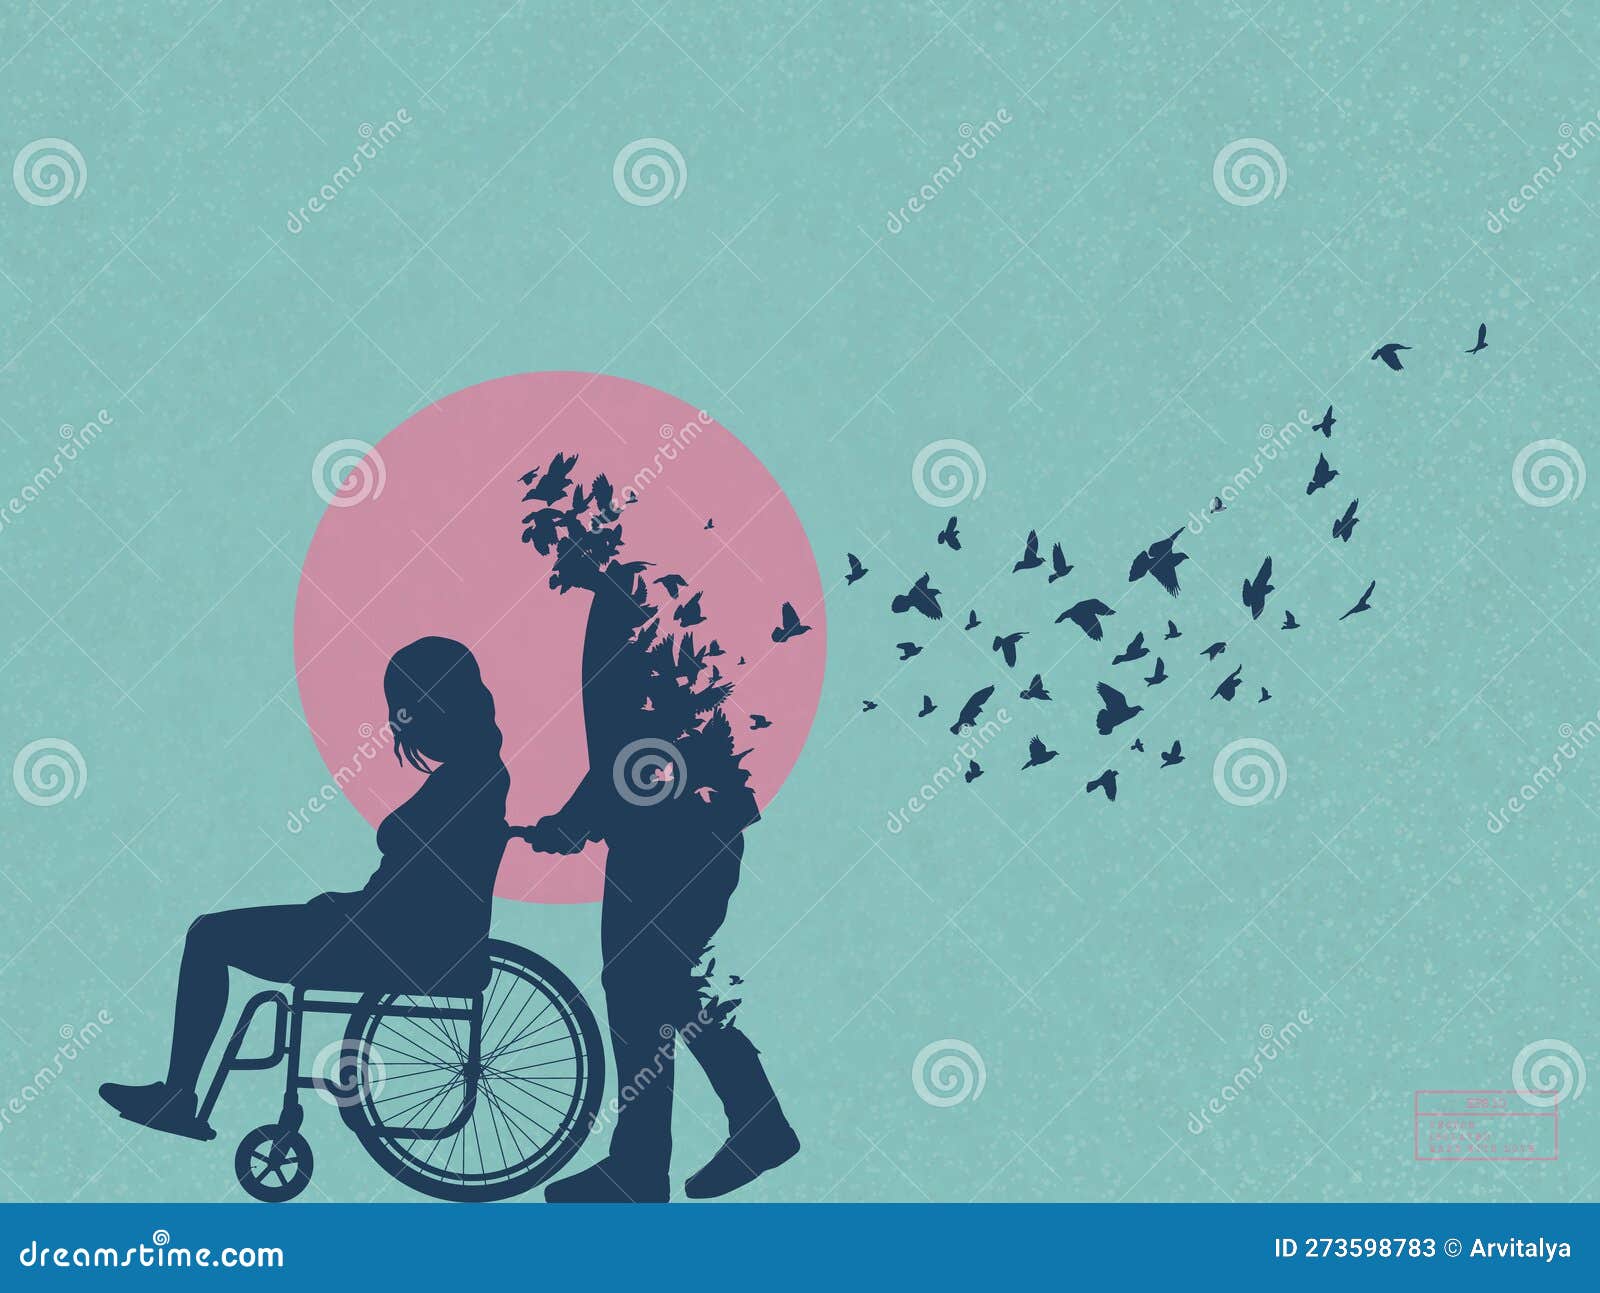 https://thumbs.dreamstime.com/z/disabile-sedia-rotelle-profilo-di-coppia-amorevole-morte-dopo-la-illustrazione-vettoriale-273598783.jpg